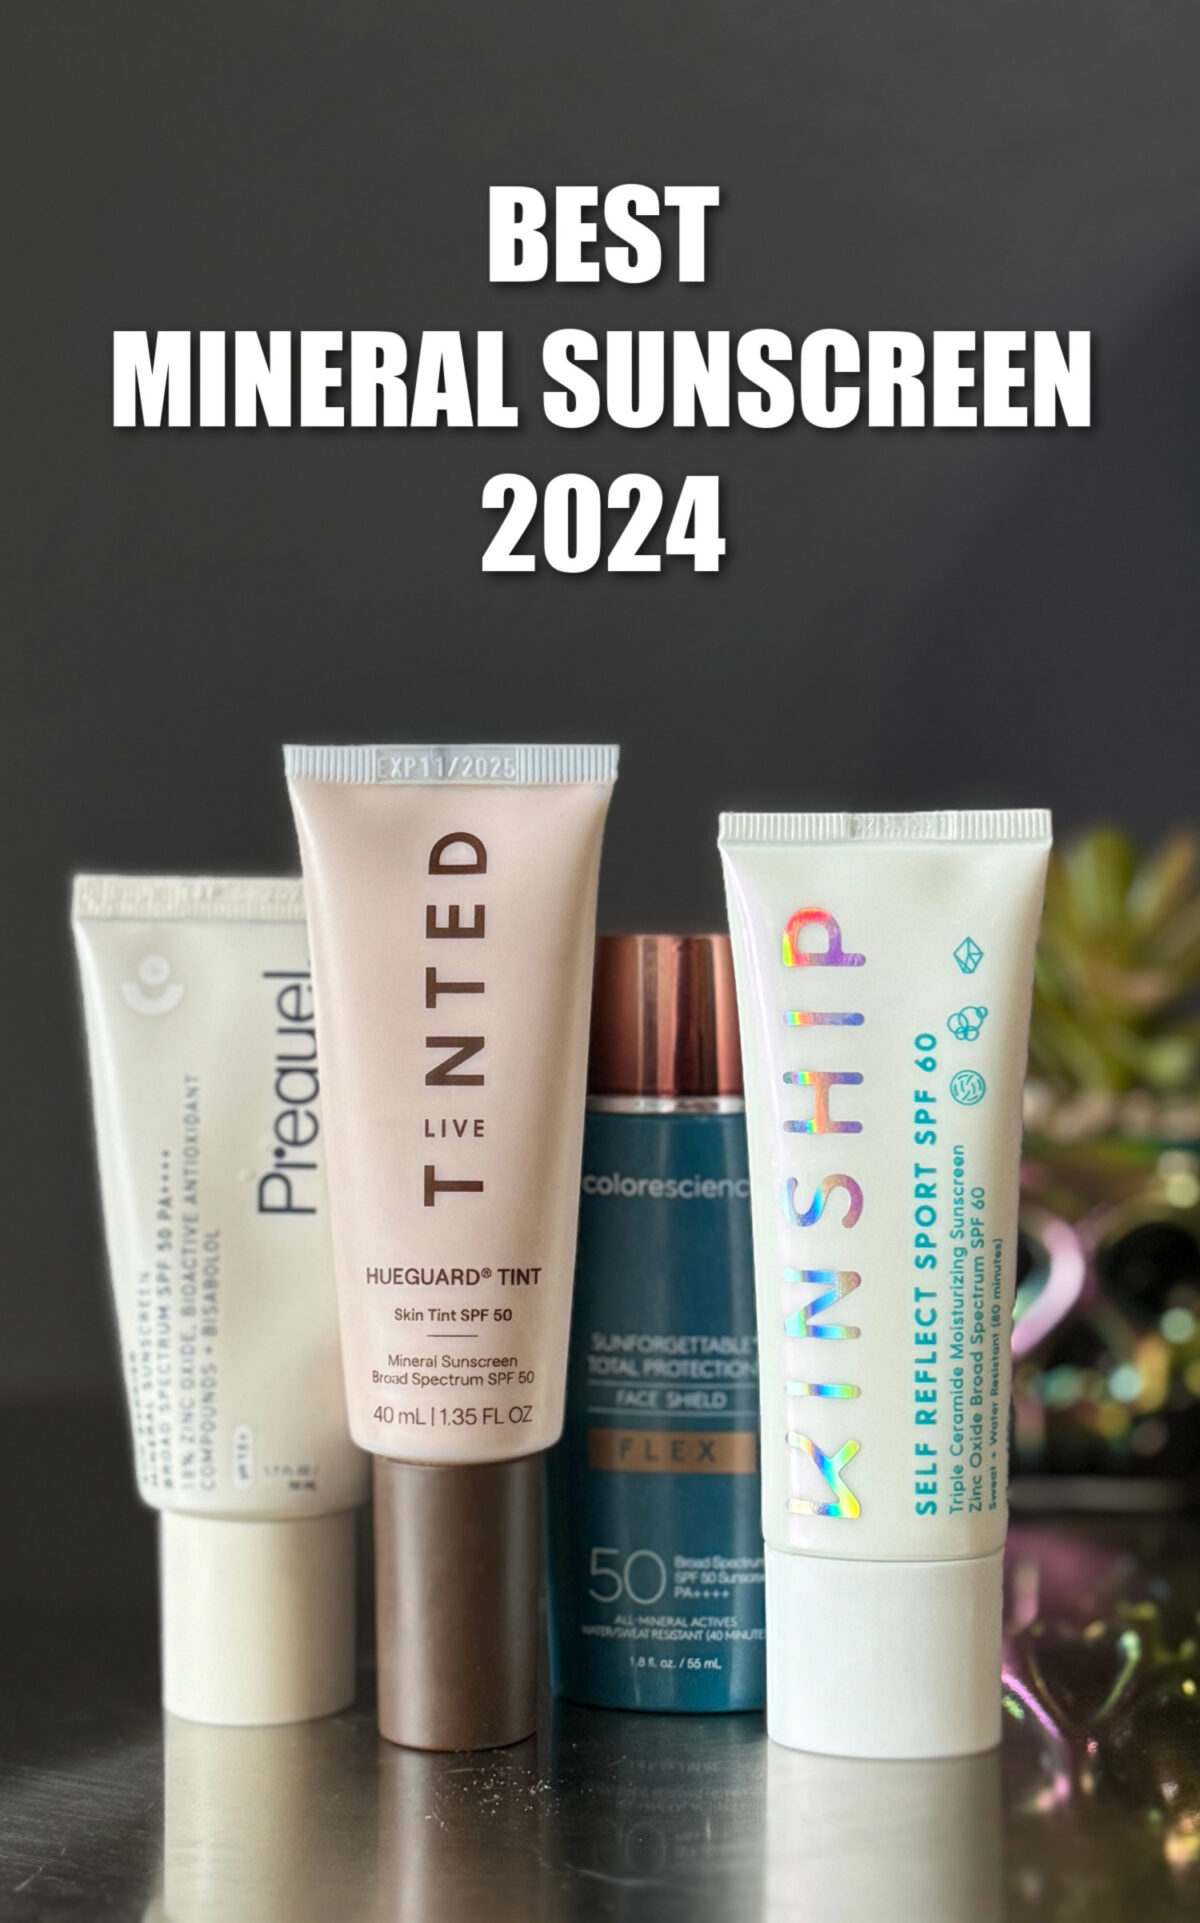 Best Mineral Sunscreen 2024